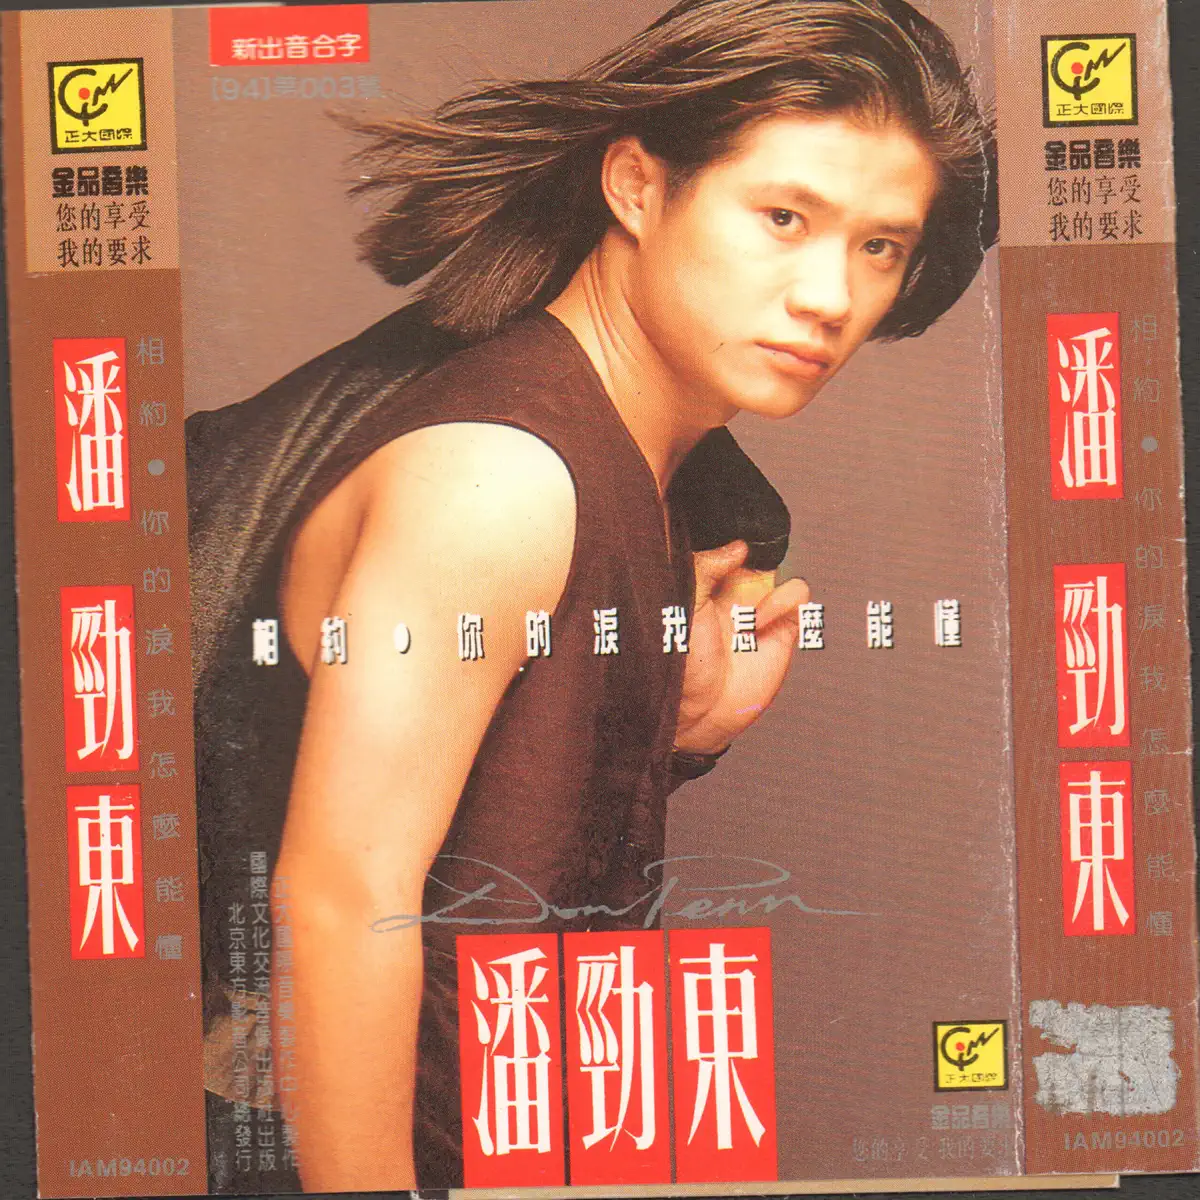 潘劲东 - 相約 (1994) [iTunes Plus AAC M4A]-新房子